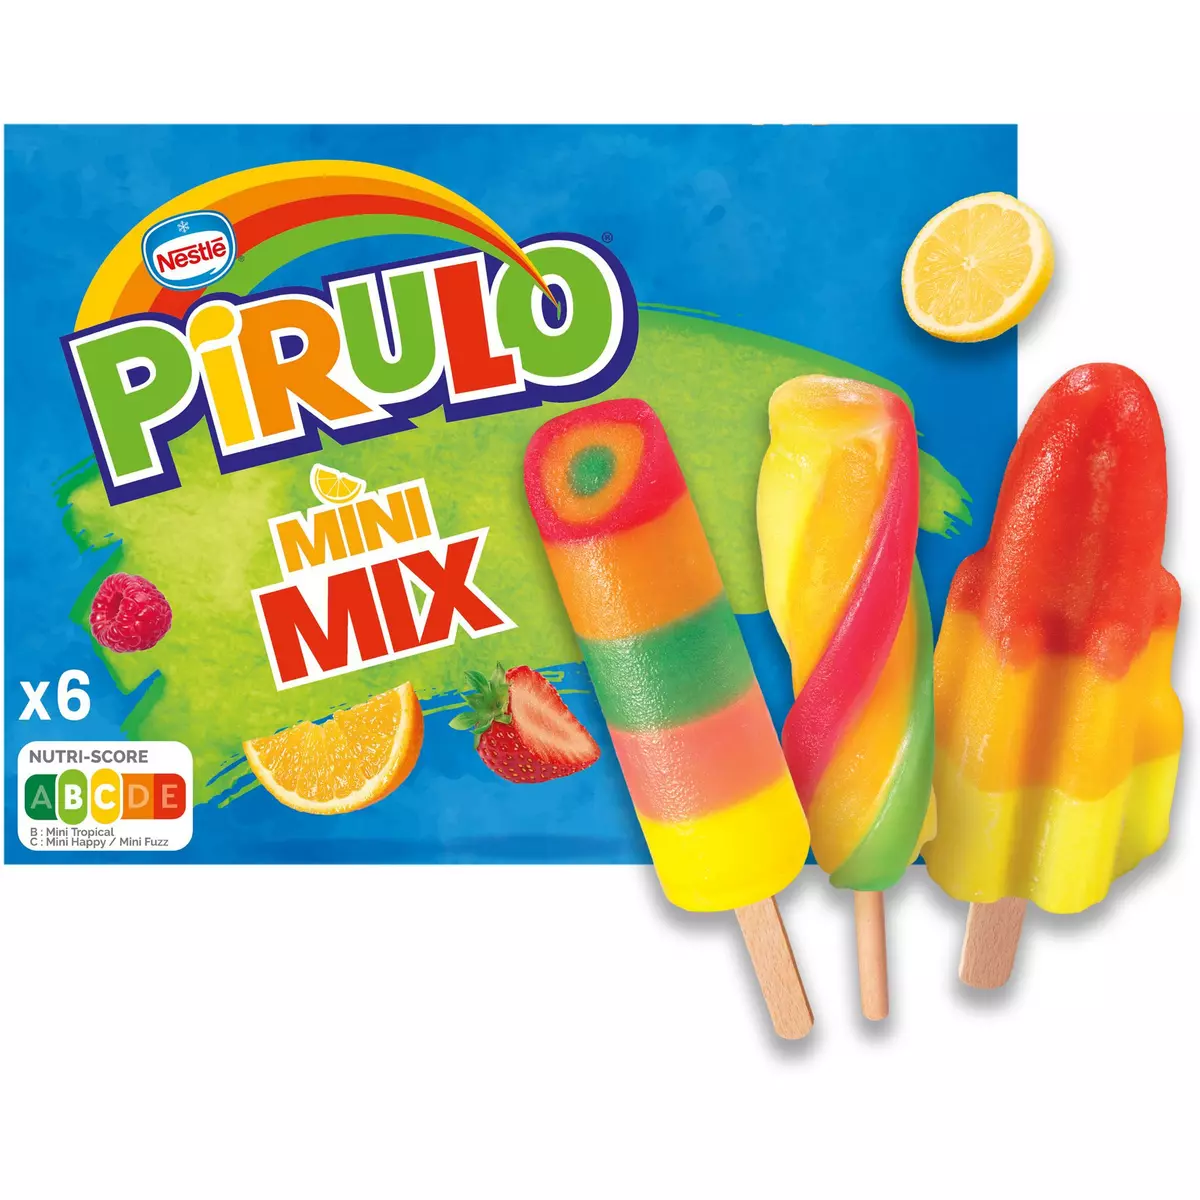 PIRULO Bâtonnet glacé mix aromatisé aux fruits 6 pièces 300g